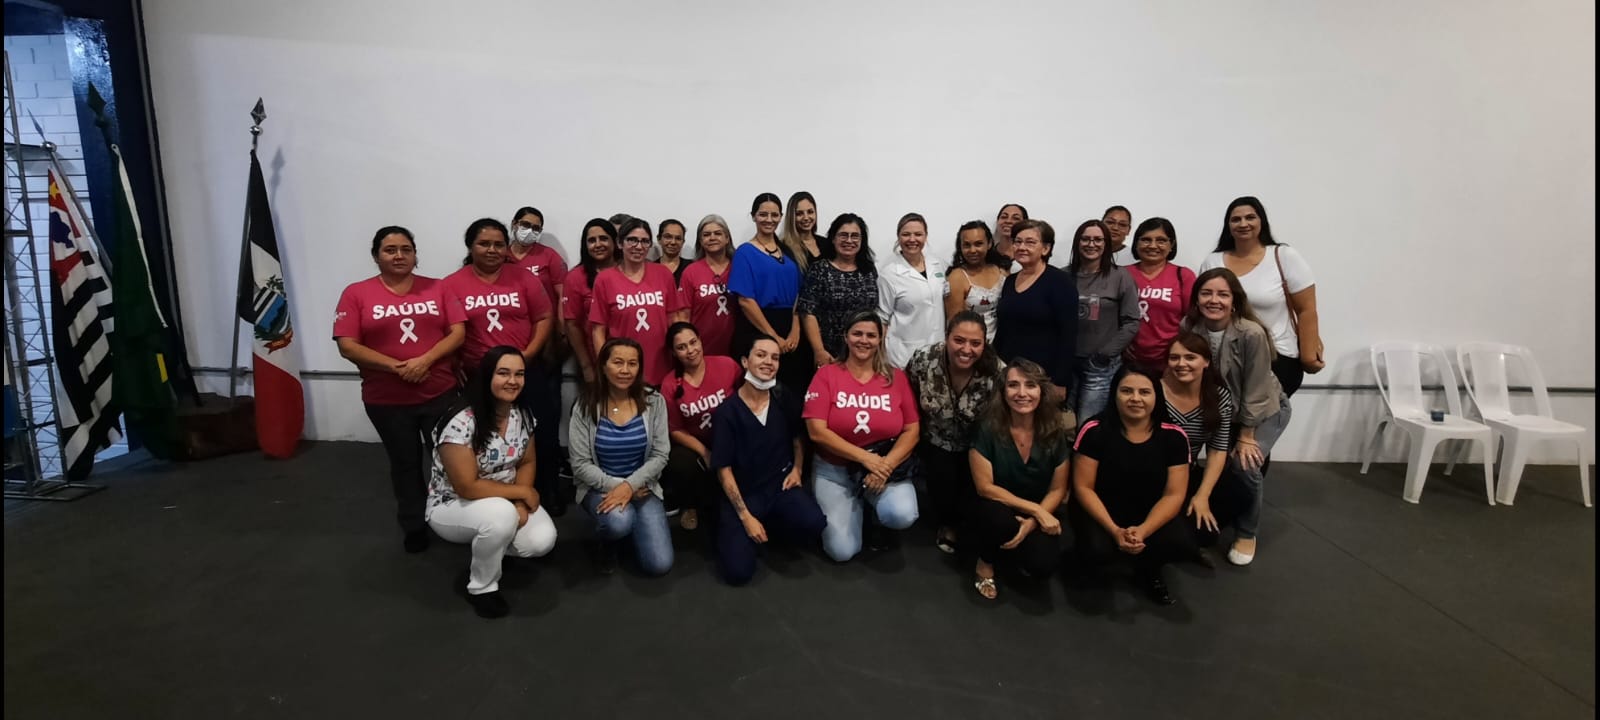 Março Lilás: Saúde de Itararé (SP) promove palestra sobre prevenção do câncer de colo de útero